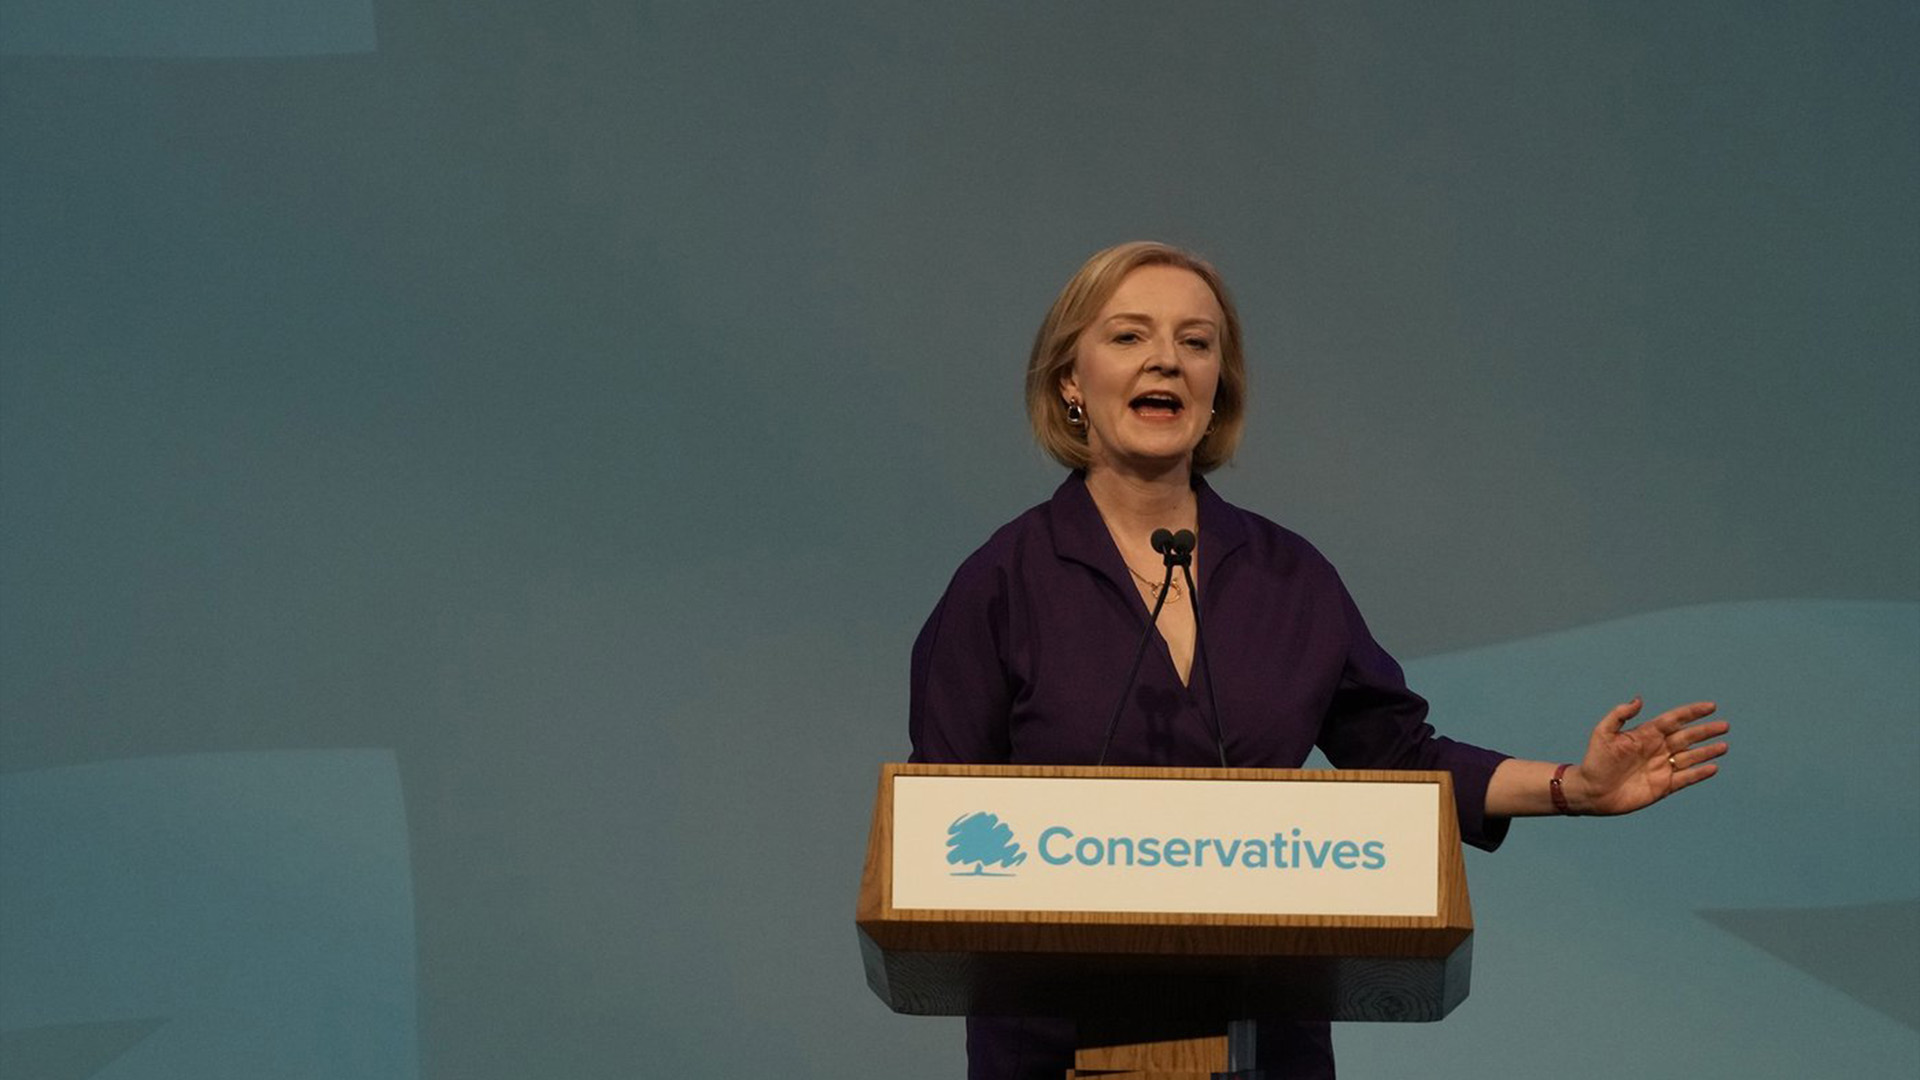 Le Parti conservateur britannique a choisi la secrétaire aux Affaires étrangères Liz Truss comme nouvelle cheffe du parti, ce qui trace la voie à sa nomination au poste de première ministre du Royaume-Uni.